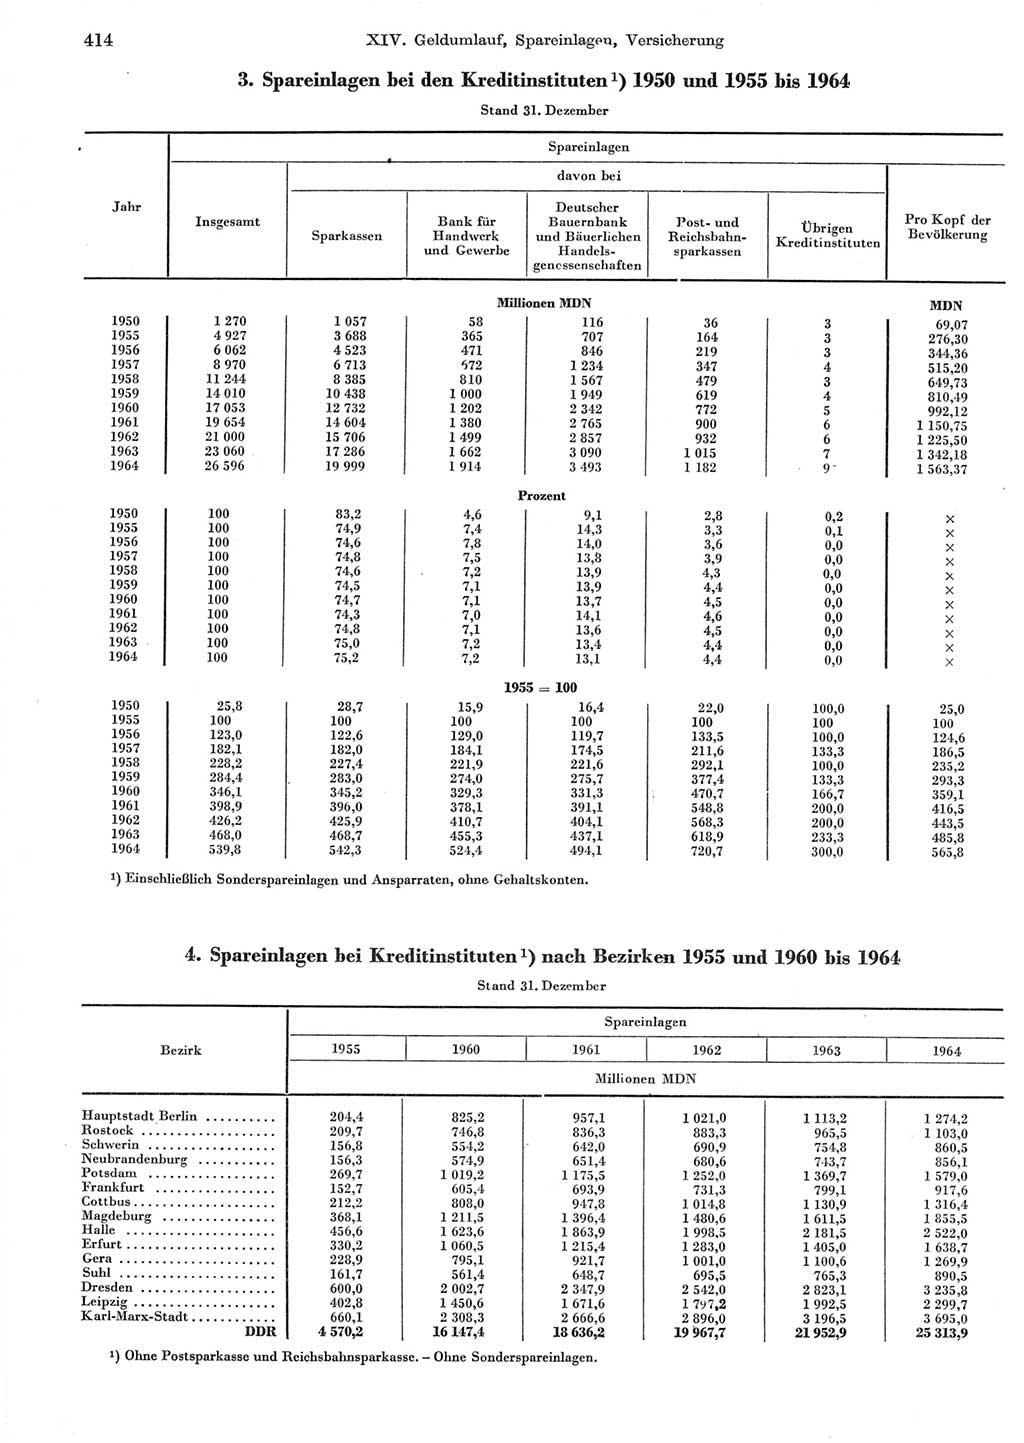 Statistisches Jahrbuch der Deutschen Demokratischen Republik (DDR) 1965, Seite 414 (Stat. Jb. DDR 1965, S. 414)